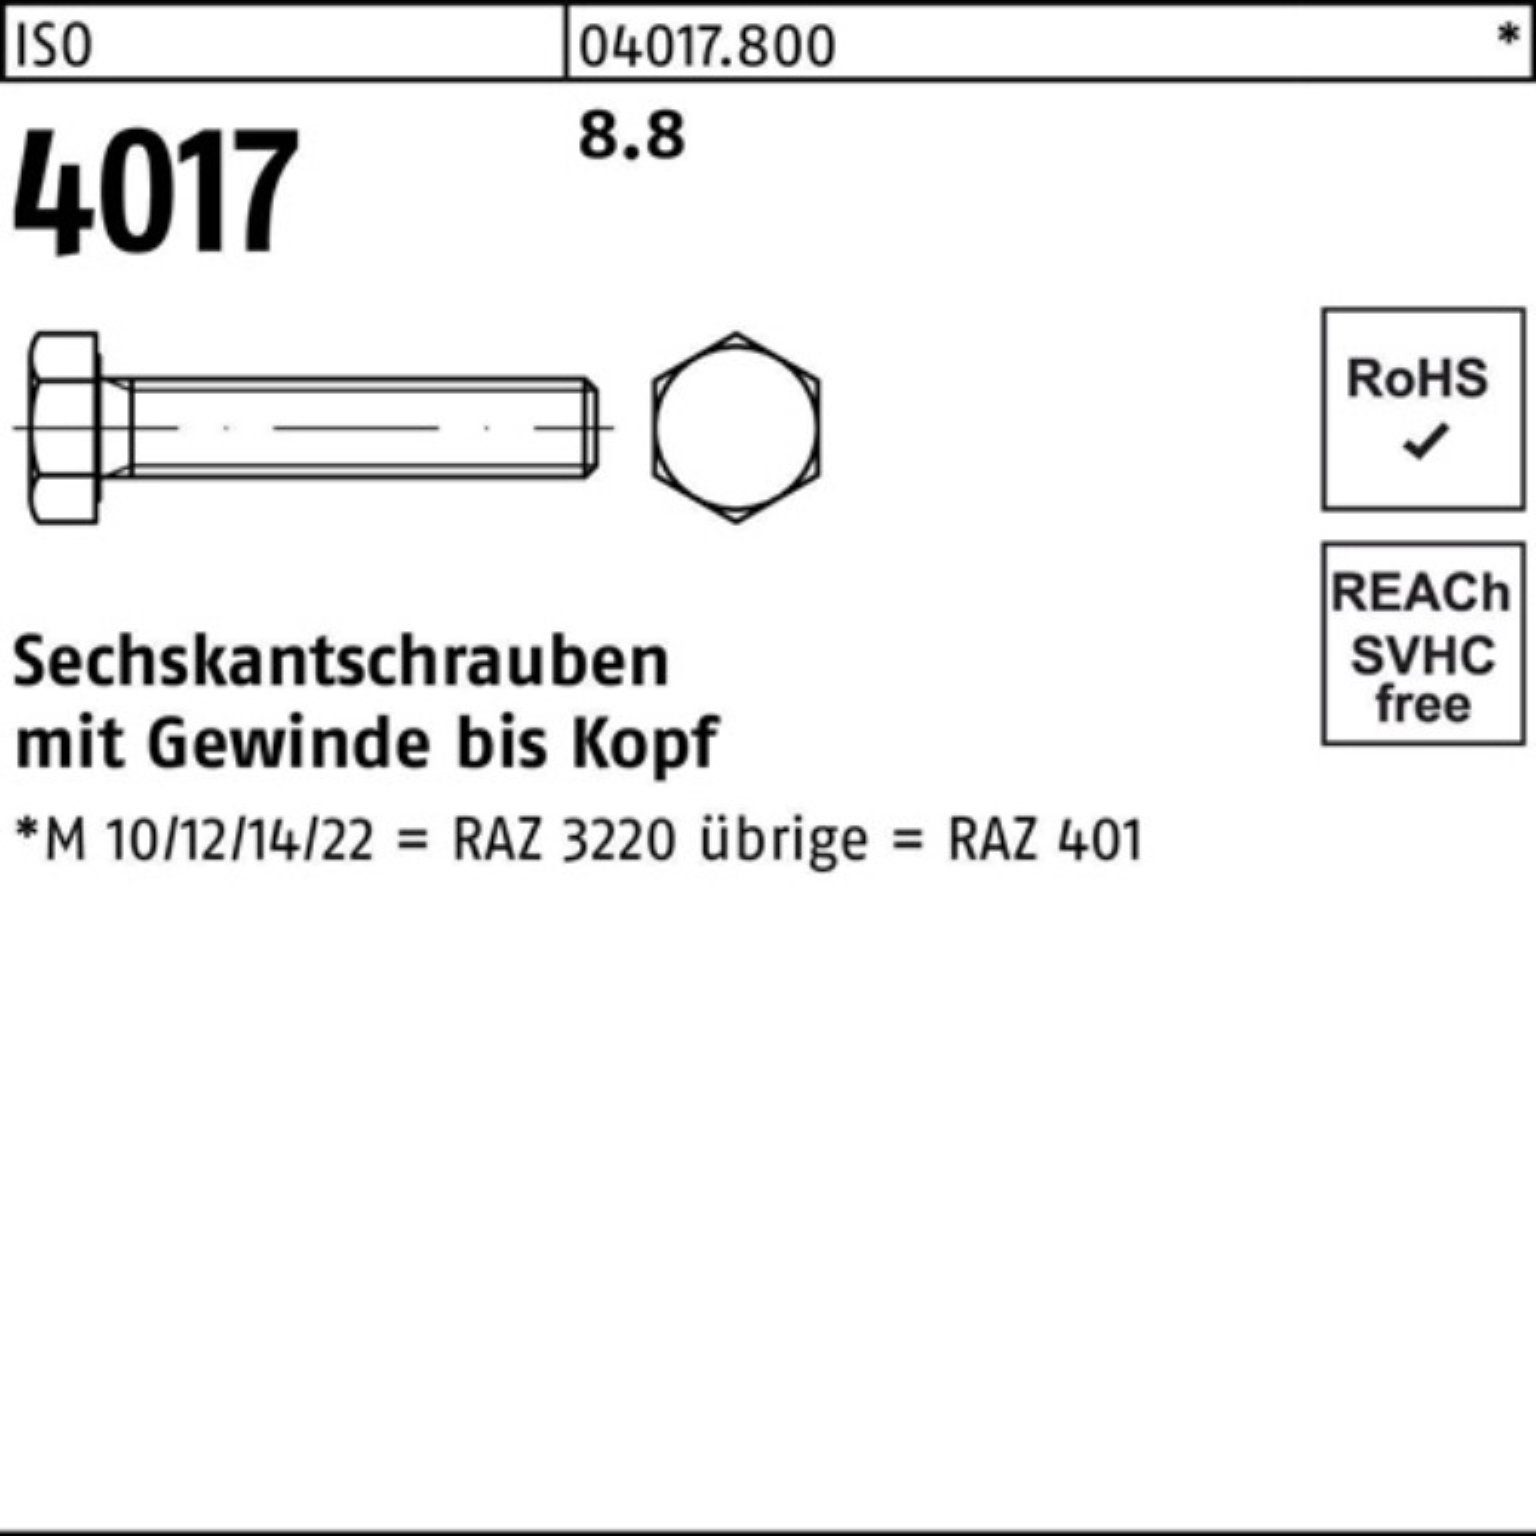 Sechskantschraube Pack VG 280 ISO 1 401 4017 Sechskantschraube 8.8 Bufab ISO 100er Stück M20x